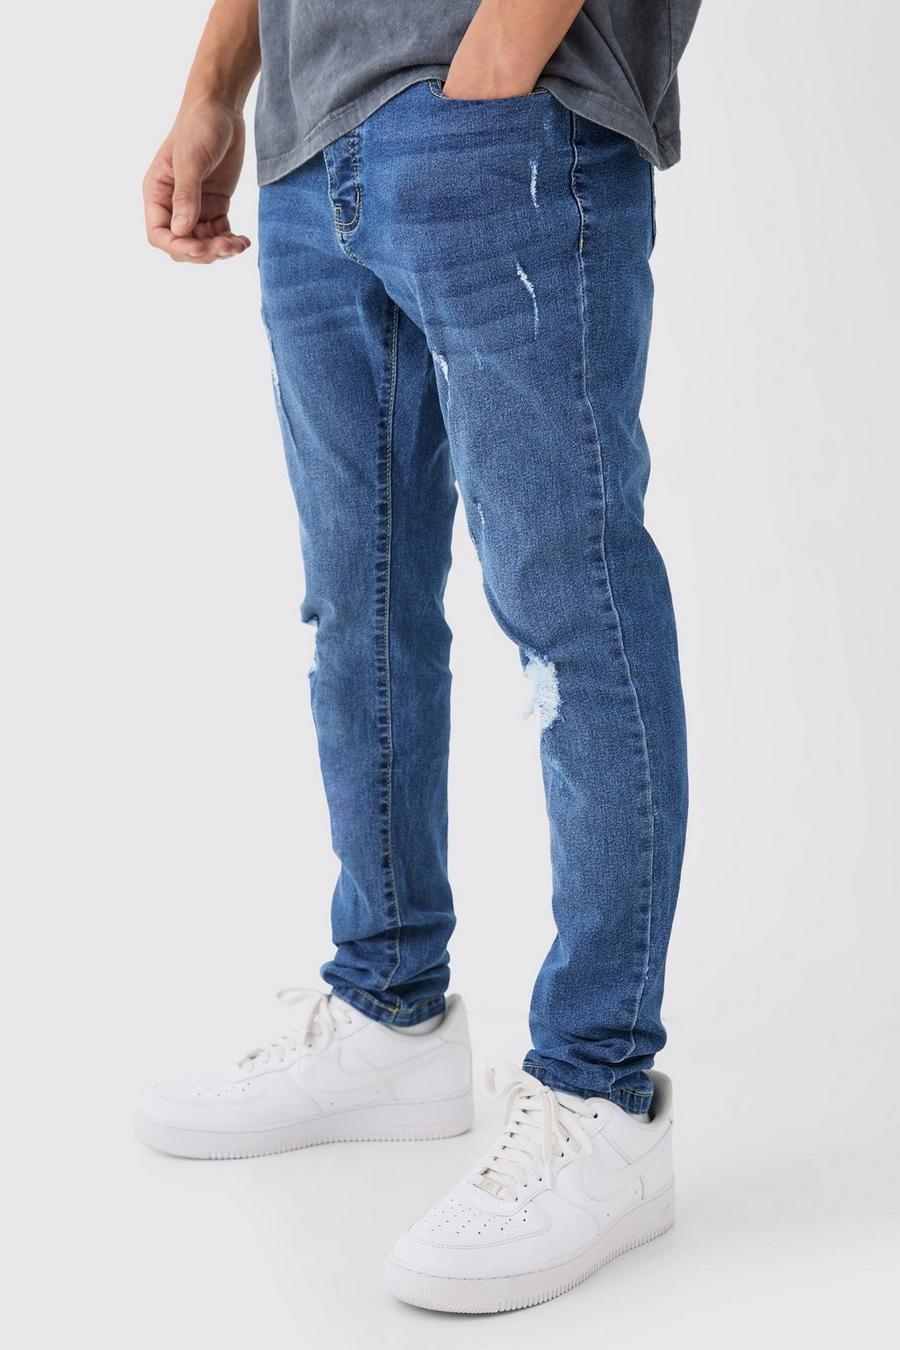 Jeans Skinny Fit Stretch con strappi estremi sul ginocchio, Mid blue